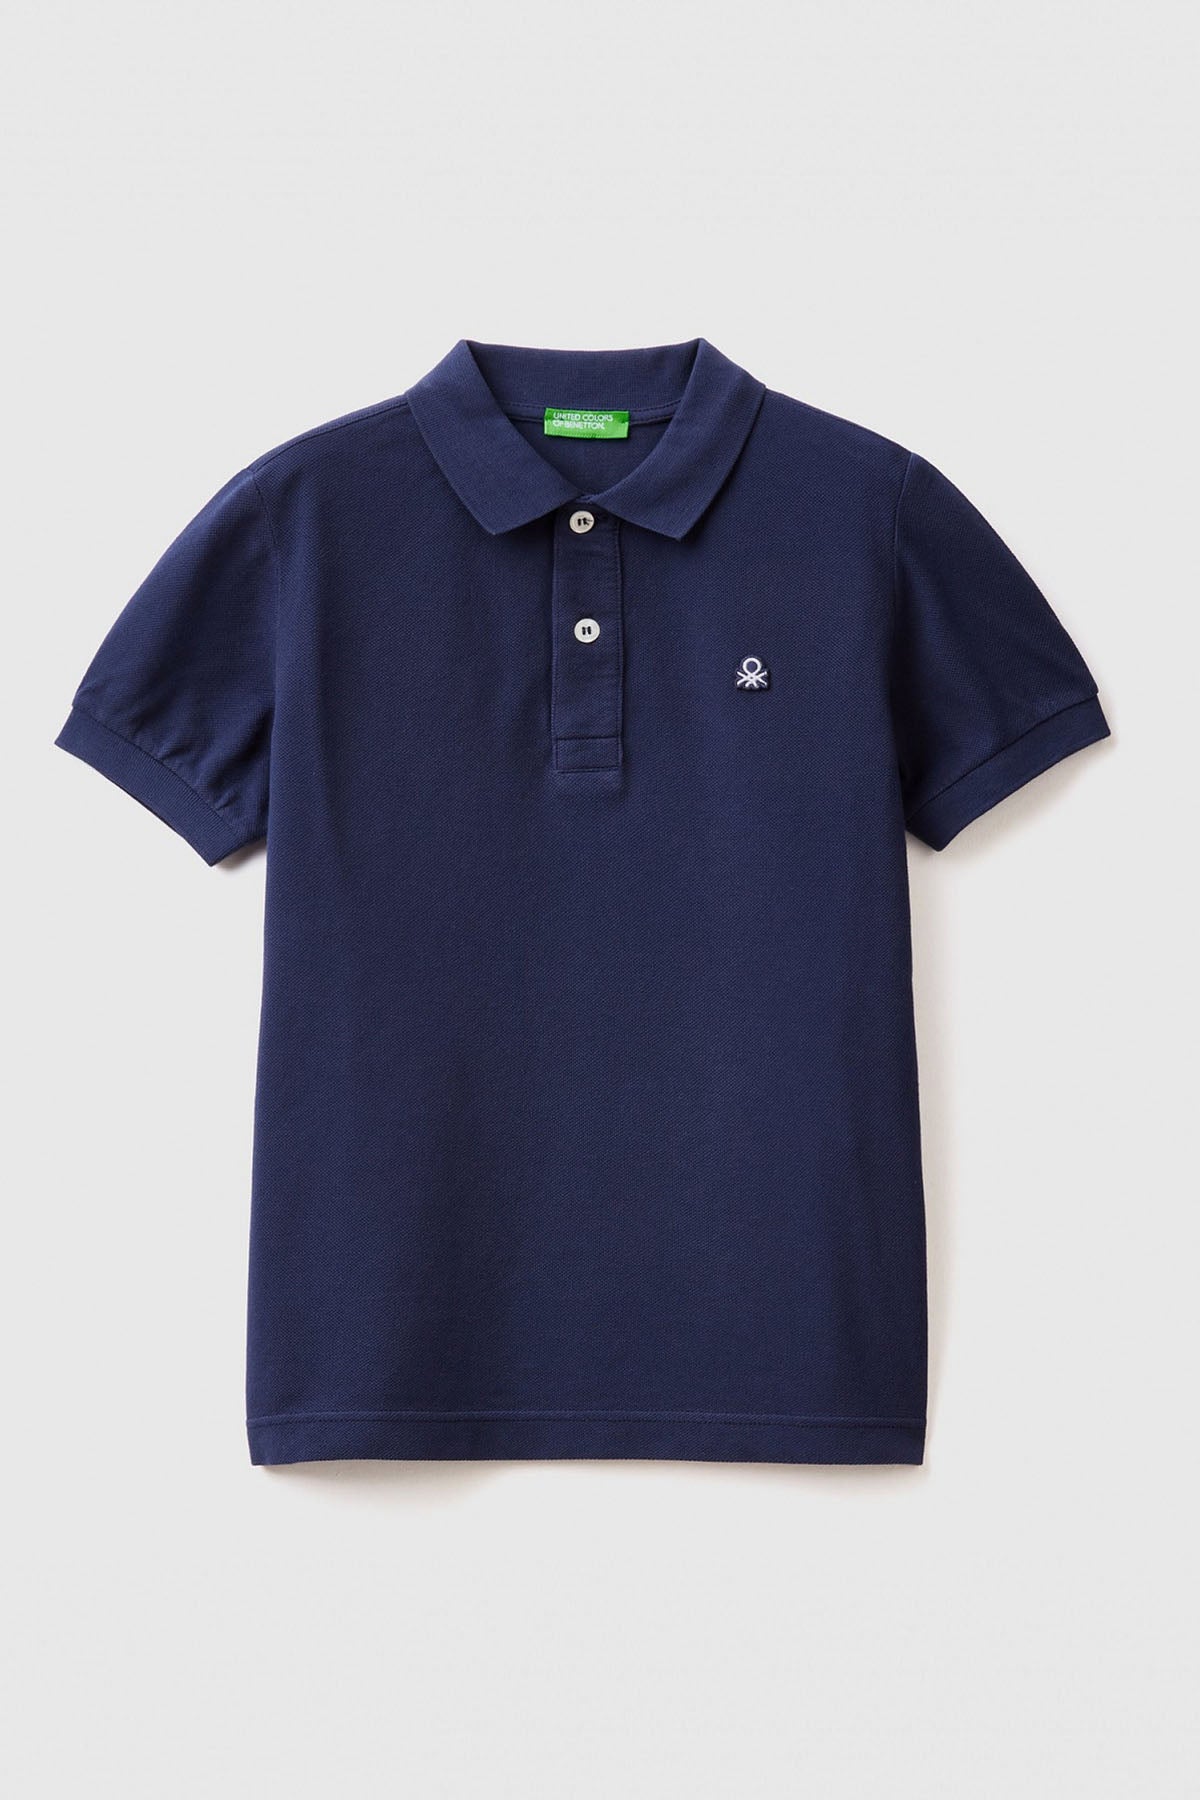 United Colors Of Benetton % 100 Pamuk Erkek Çocuk Polo T Shirt 3089C300Q LACİVERT